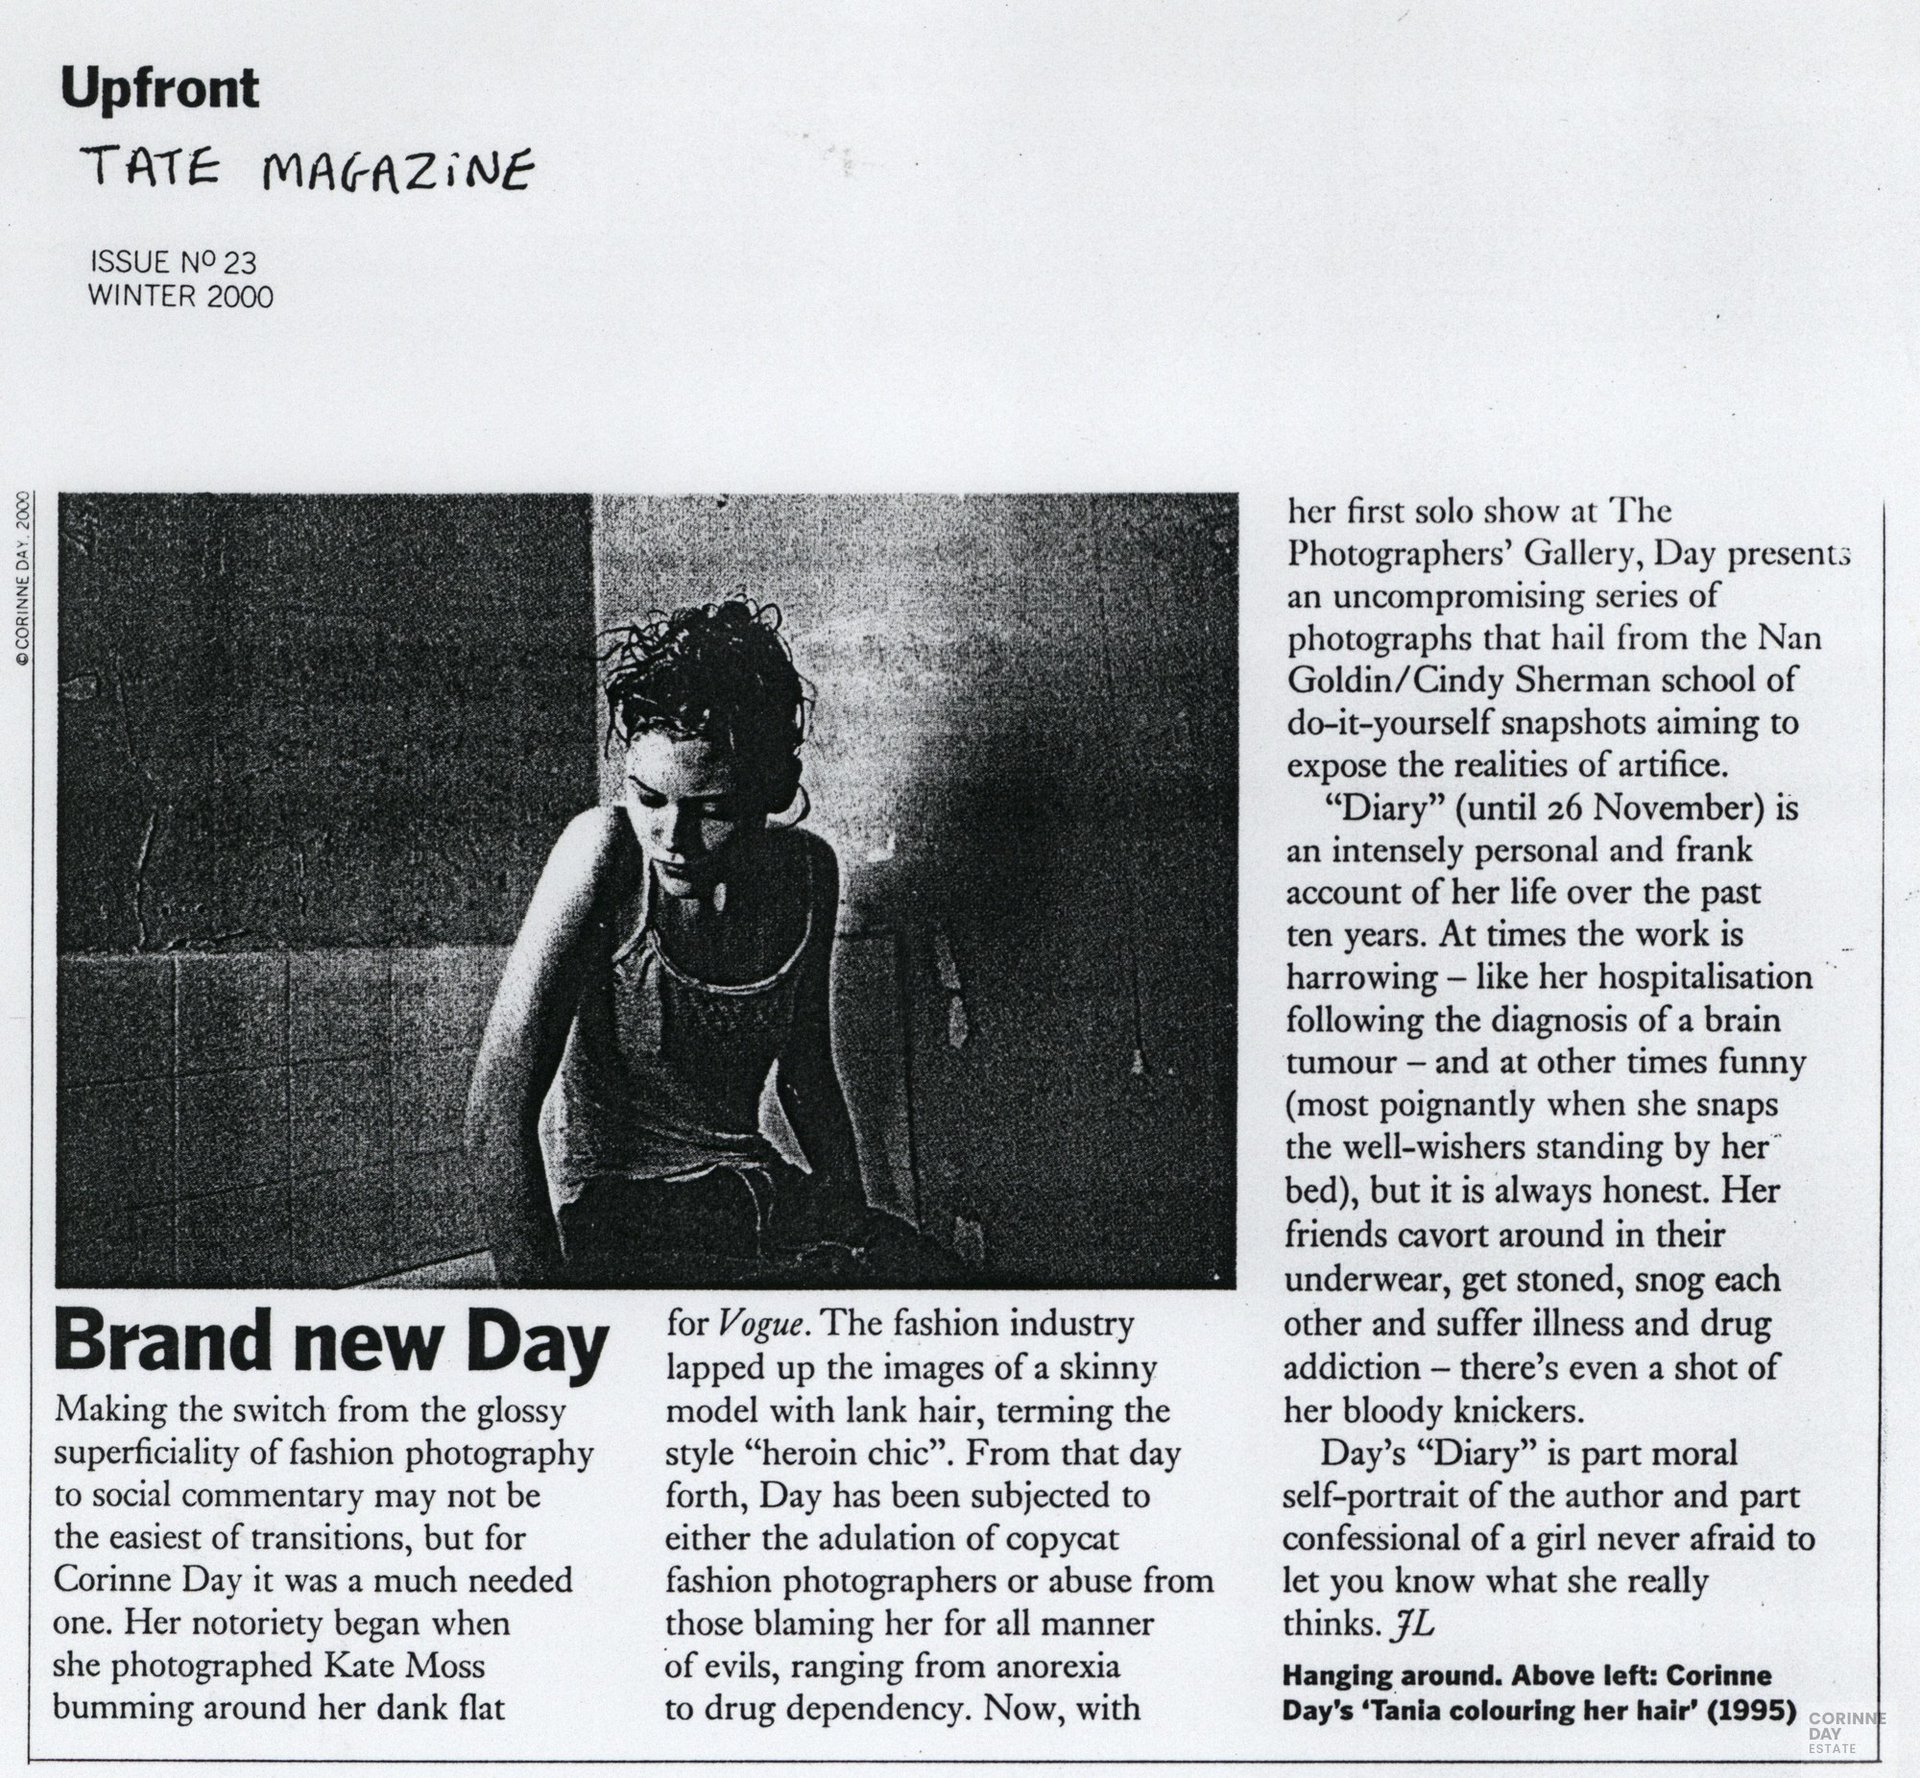 Brand new day, Tate Magazine, 2000 — Image 1 of 1